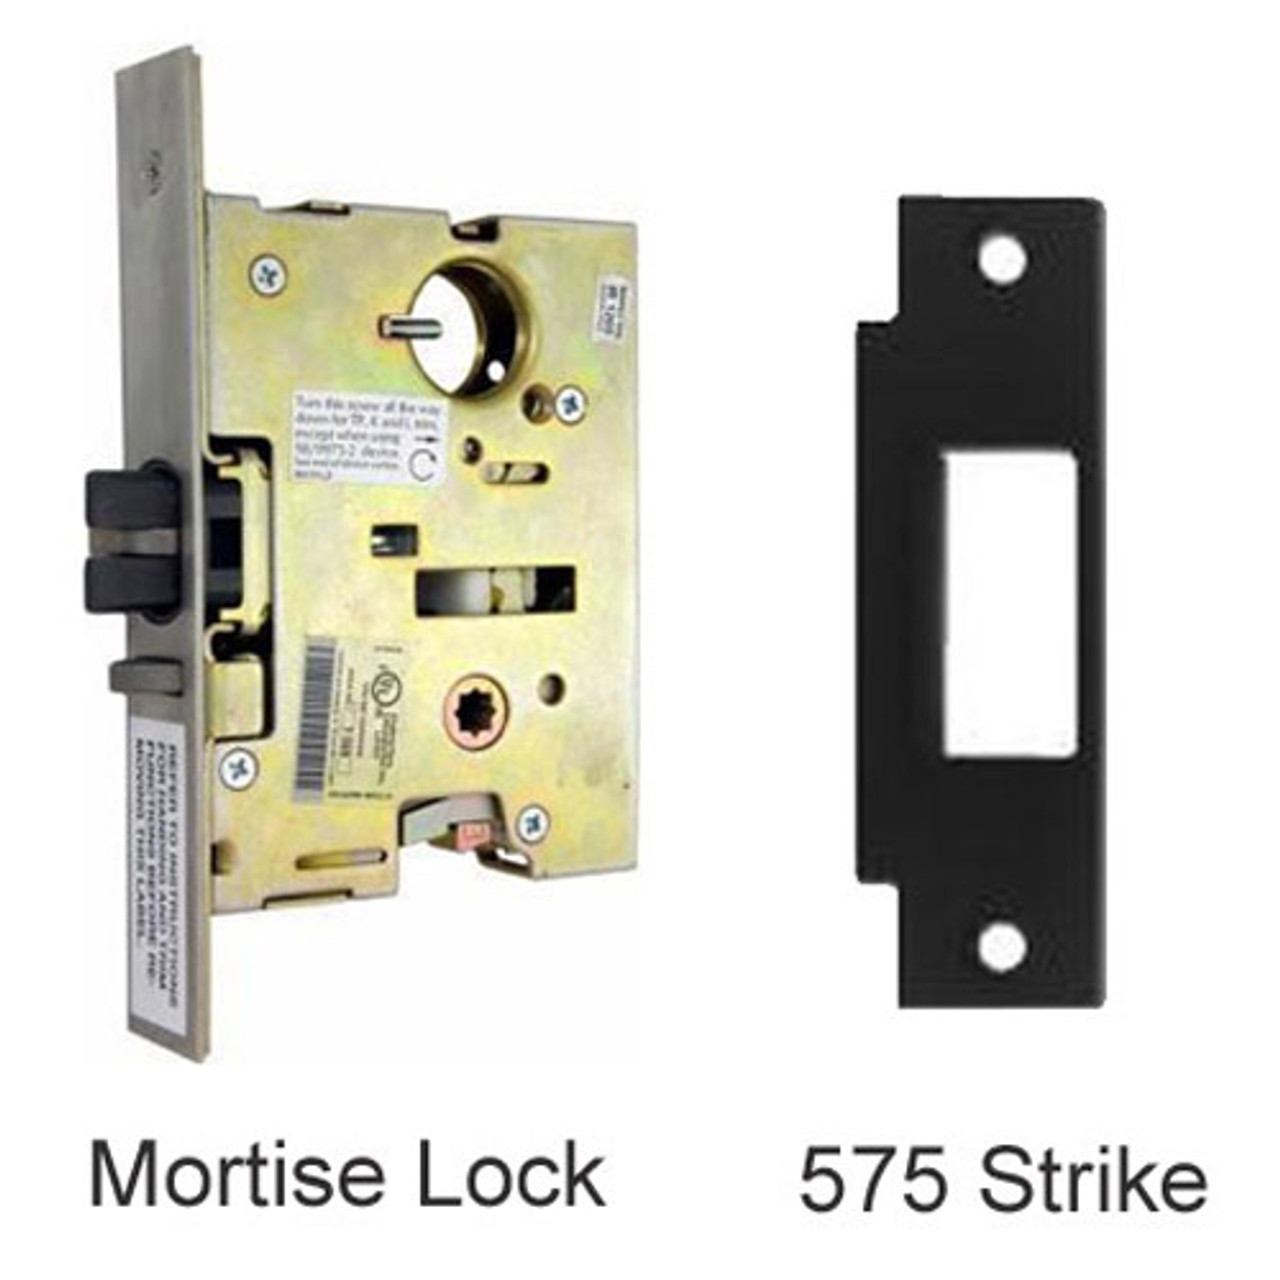 EL9875EO-US3-4 Von Duprin Mortise Lock and Strike